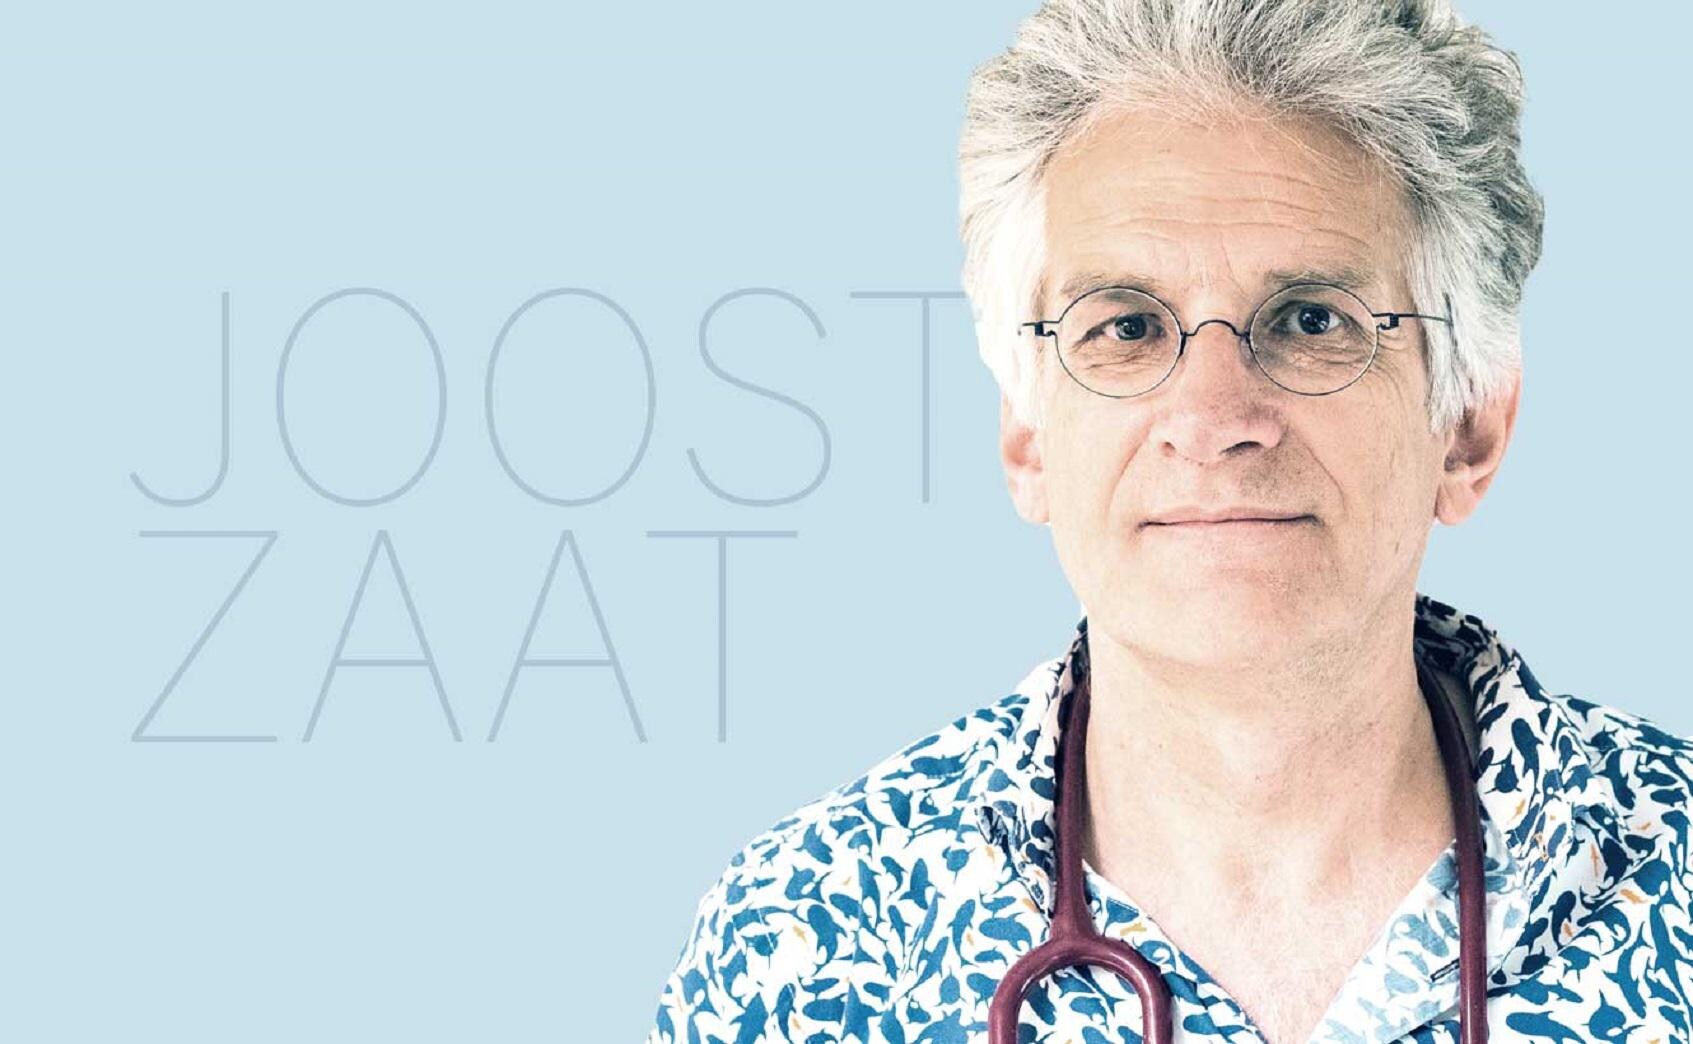 Huisarts Joost Zaat schrijft over de gevolgen van antivaxxers